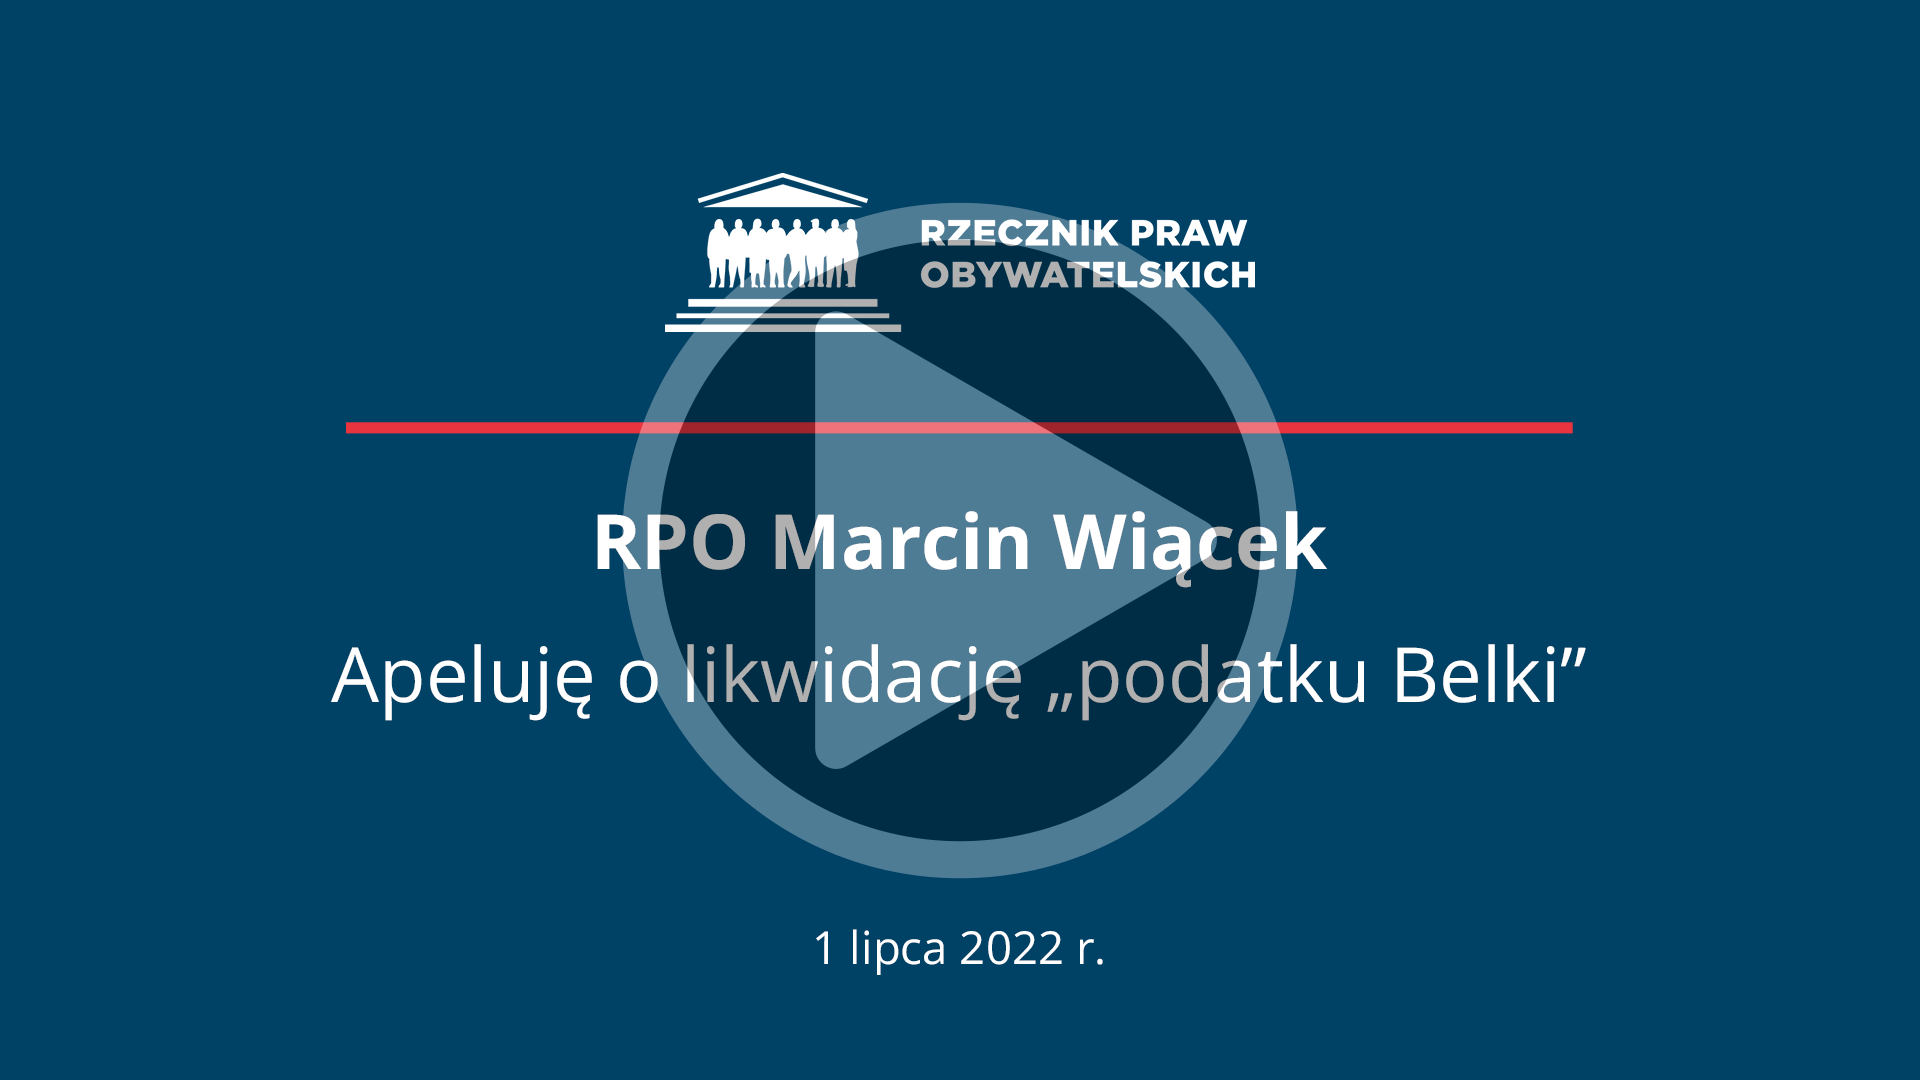 Plansza z napisem - RPO Marcin Wiącek, Apeluję o likwidację podatku Belki, 1 lipca 2022 r.-  i przyciskiem odtwarzania wideo